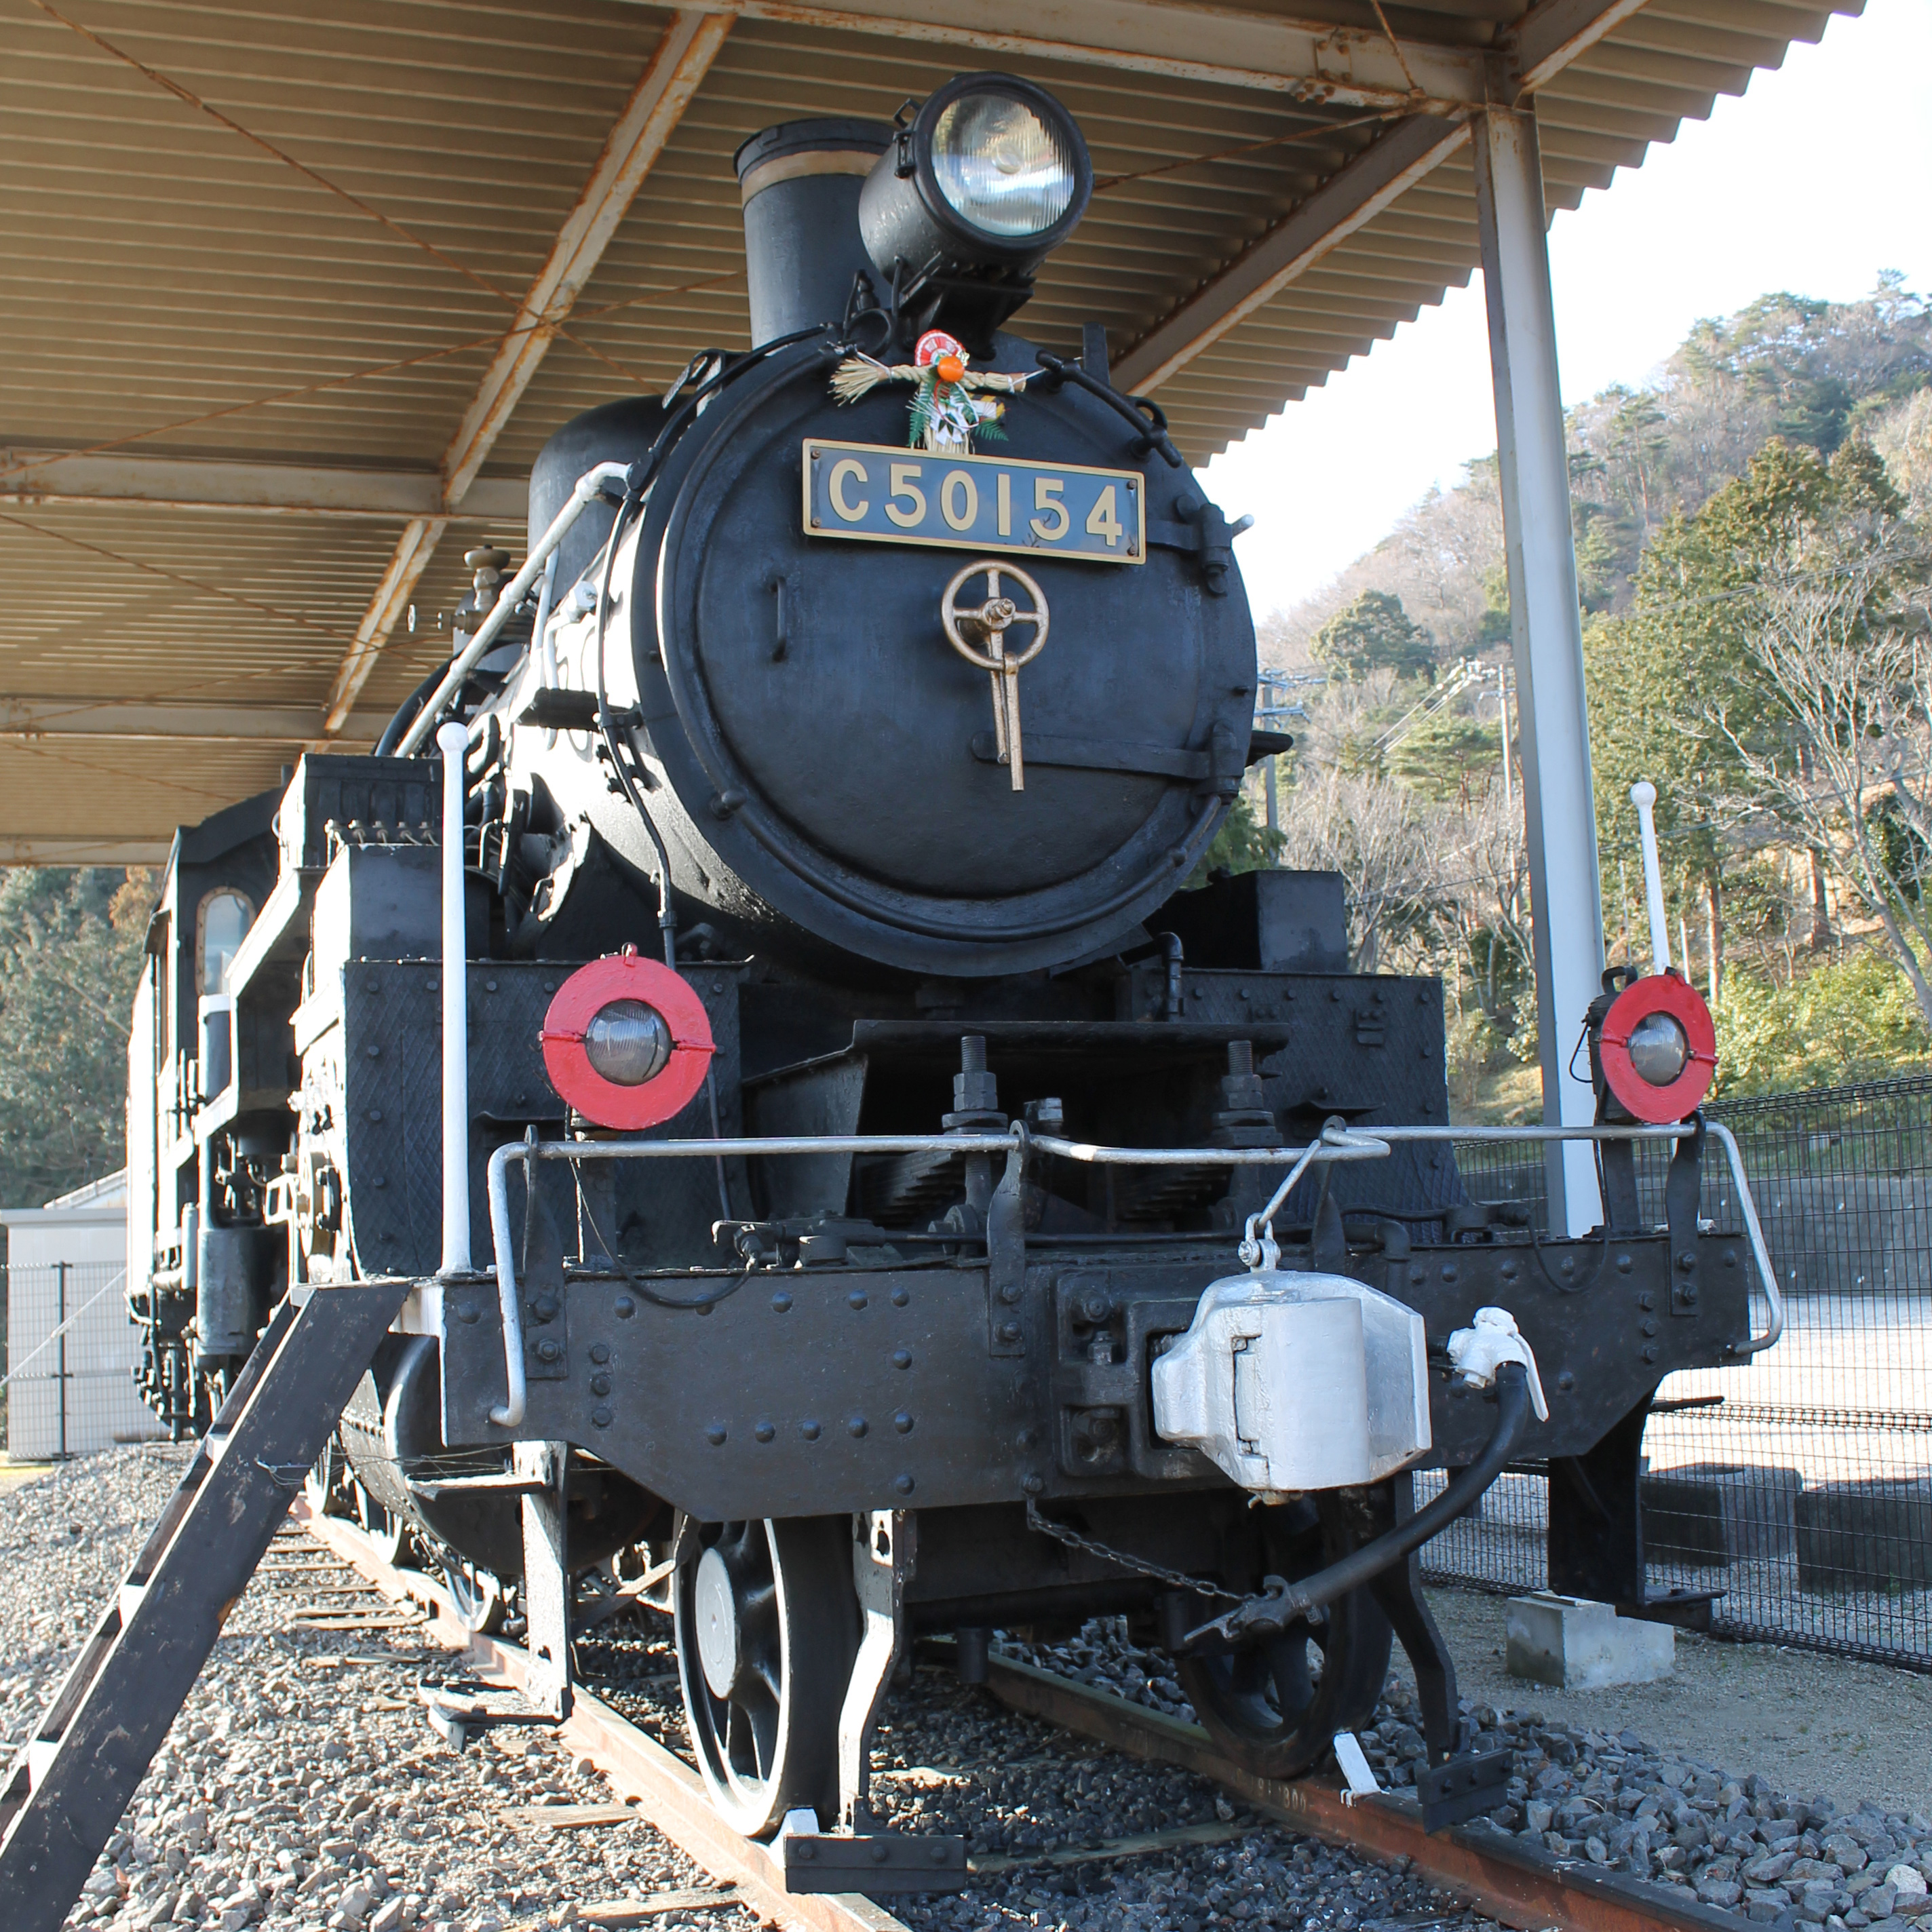 【科普】日本铁道省"八六"8620型蒸汽机车的后继之作——c50型蒸汽